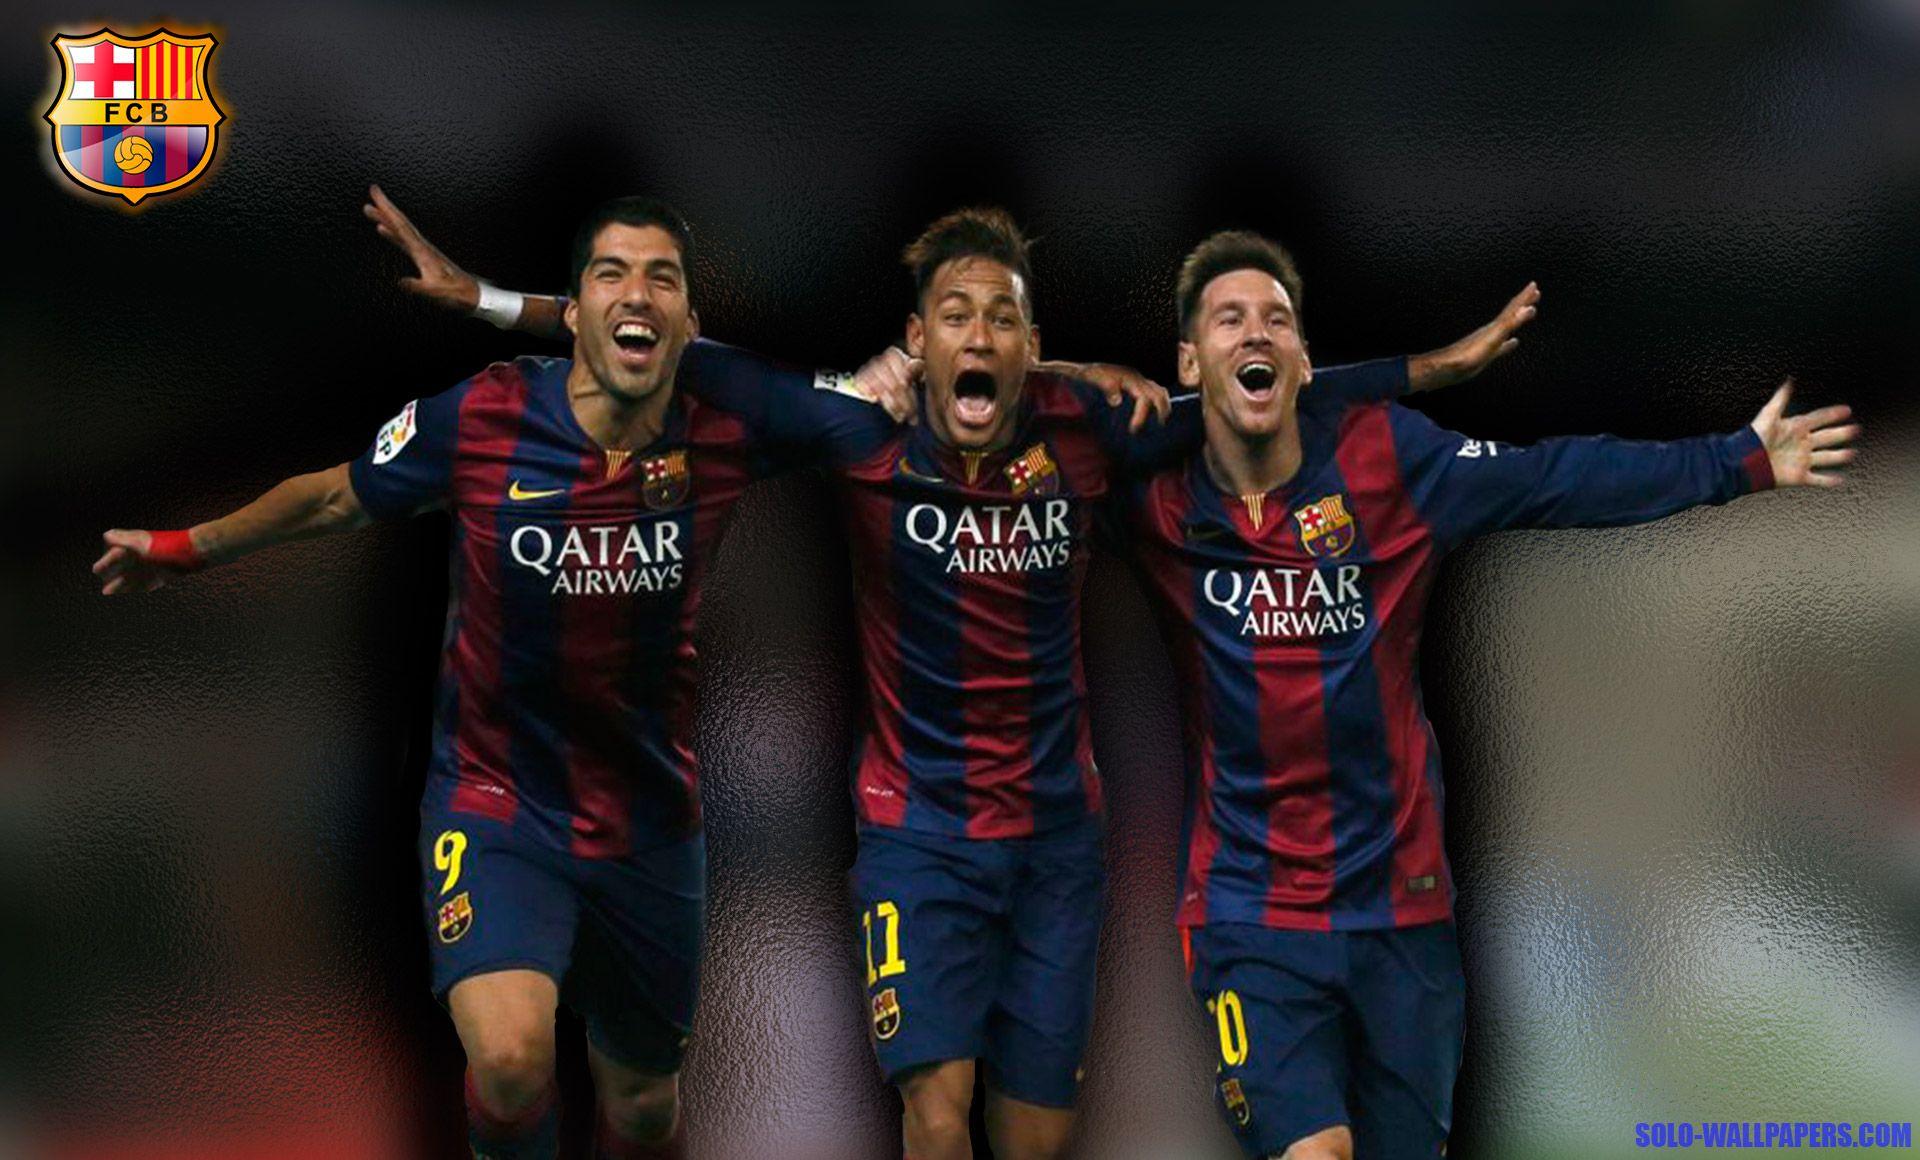 Bộ sưu tập Messi-Suarez-Neymar Wallpapers là điều không thể bỏ qua đối với các fan của Barca. Những hình ảnh này sẽ giúp bạn thấy được tình bạn tuyệt vời và mối liên kết bền chặt giữa ba chàng trai tài năng này.